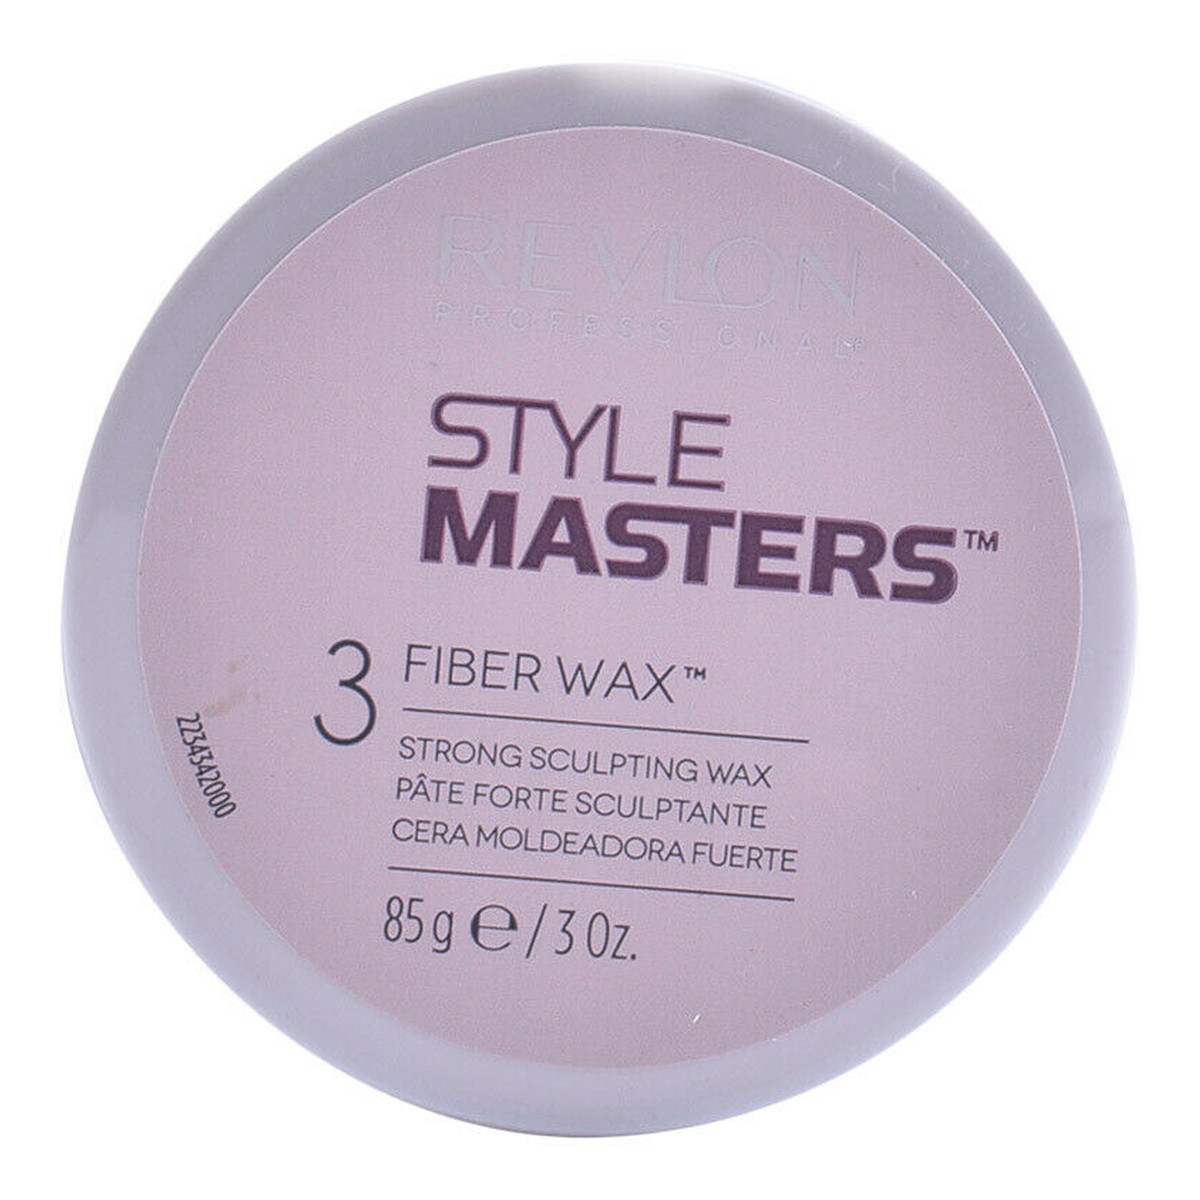 Revlon Style Masters Wosk rzeźbiący do włosów 85g